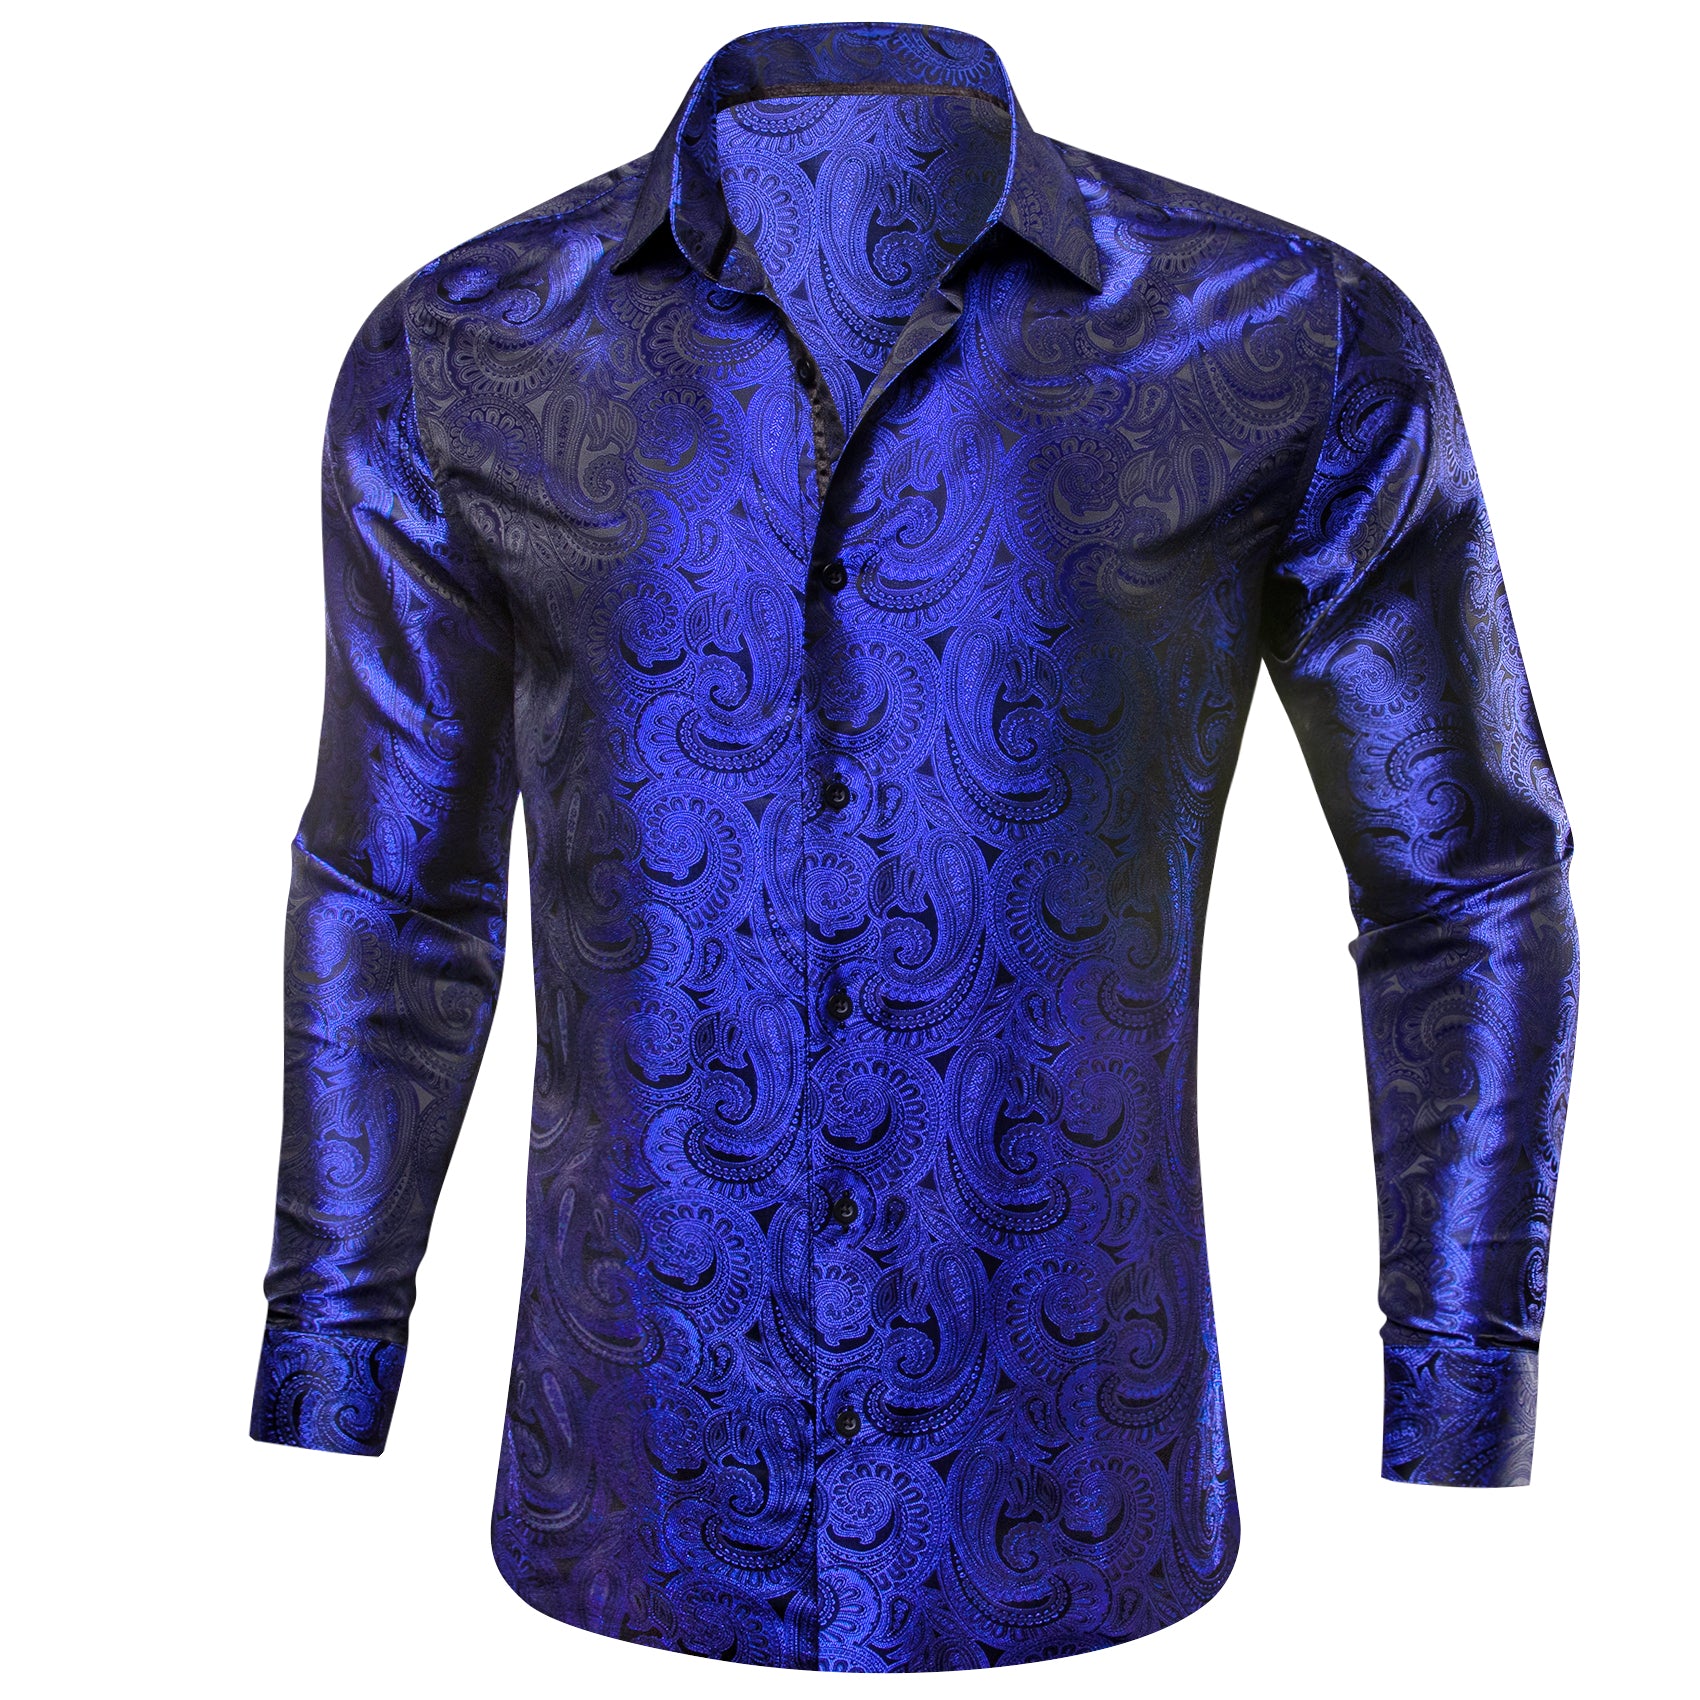 Barry.wang Sapphire Blue Paisley Silk Men's Shirt